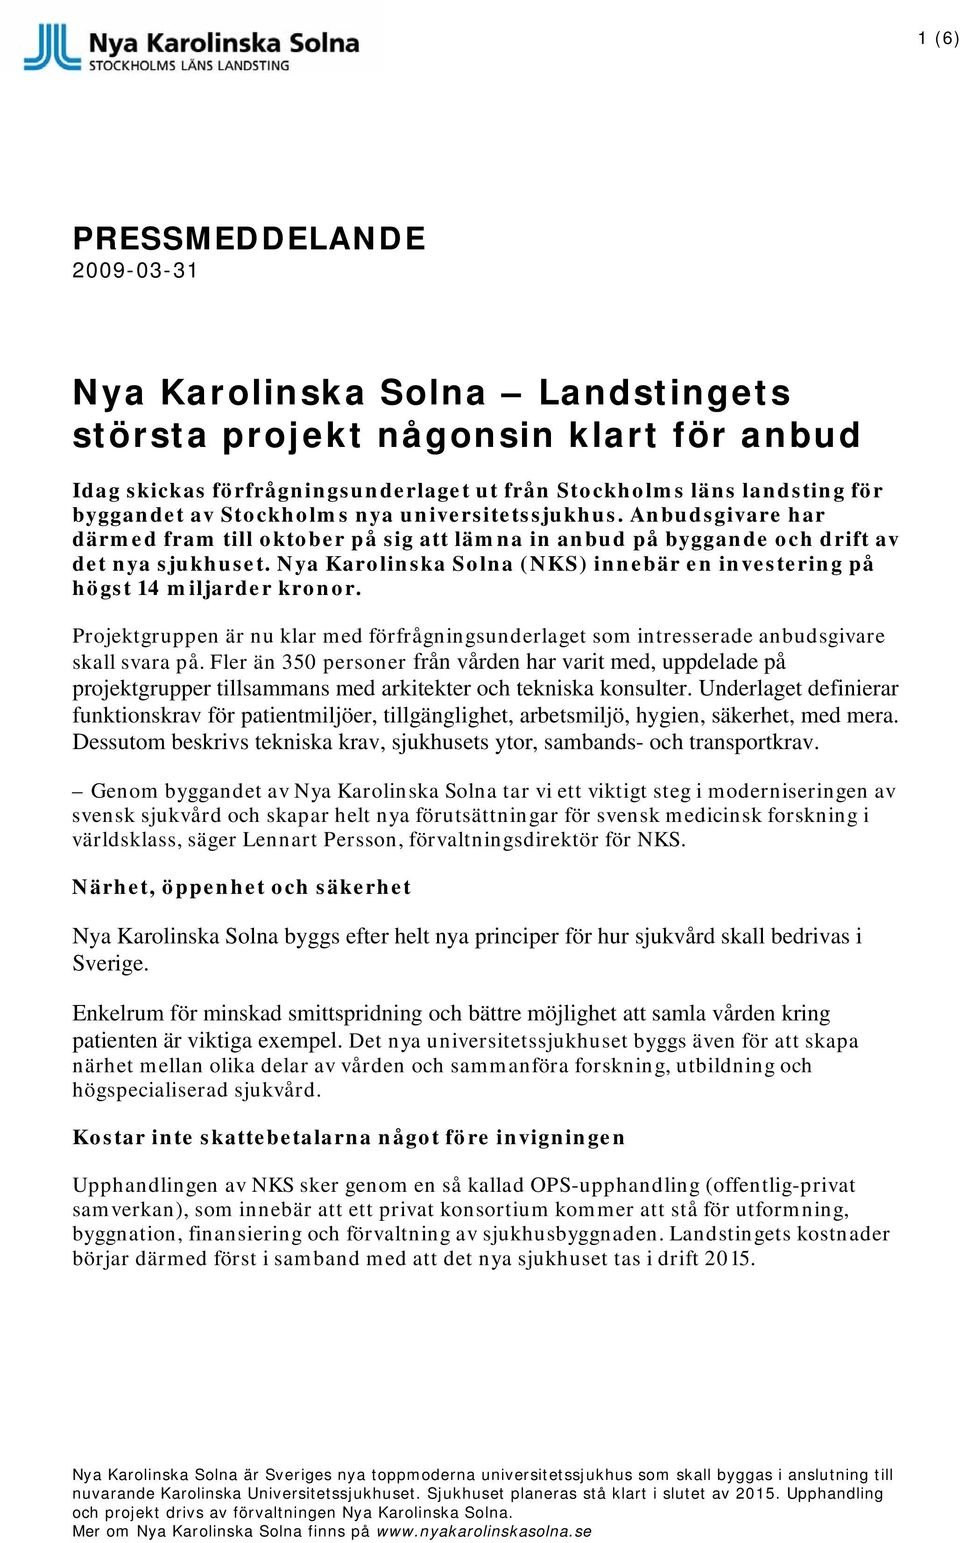 Nya Karolinska Solna (NKS) innebär en investering på högst 14 miljarder kronor. Projektgruppen är nu klar med förfrågningsunderlaget som intresserade anbudsgivare skall svara på.